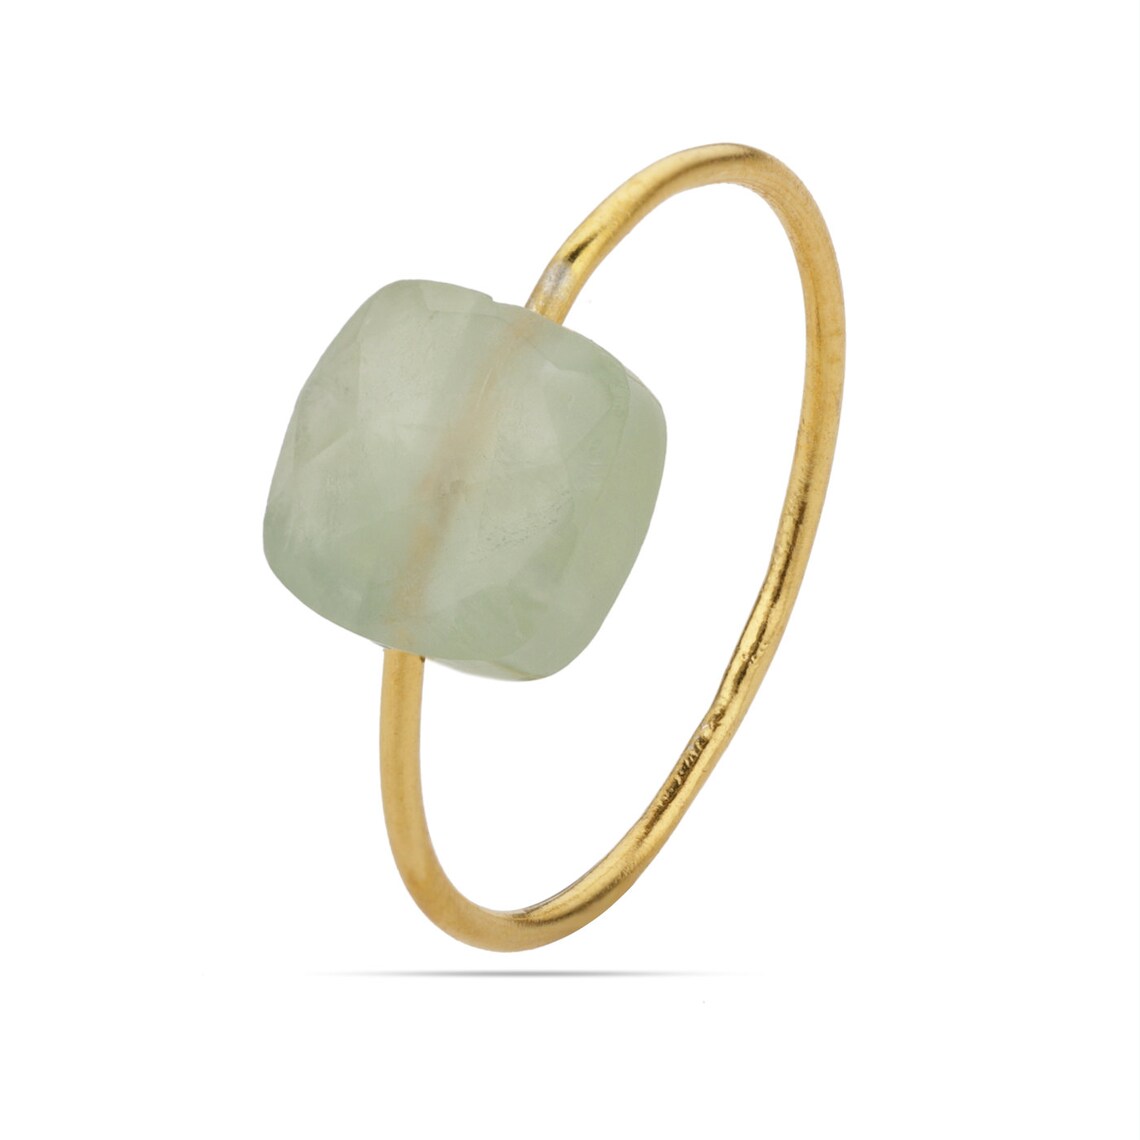 Natural Prehnite Gemstone Ring, Sterling Silver Yellow Gold Ring, Artisan Gift Ring, Stacking Ring ,Natural Prehnite Gemstone Ring Jewelry